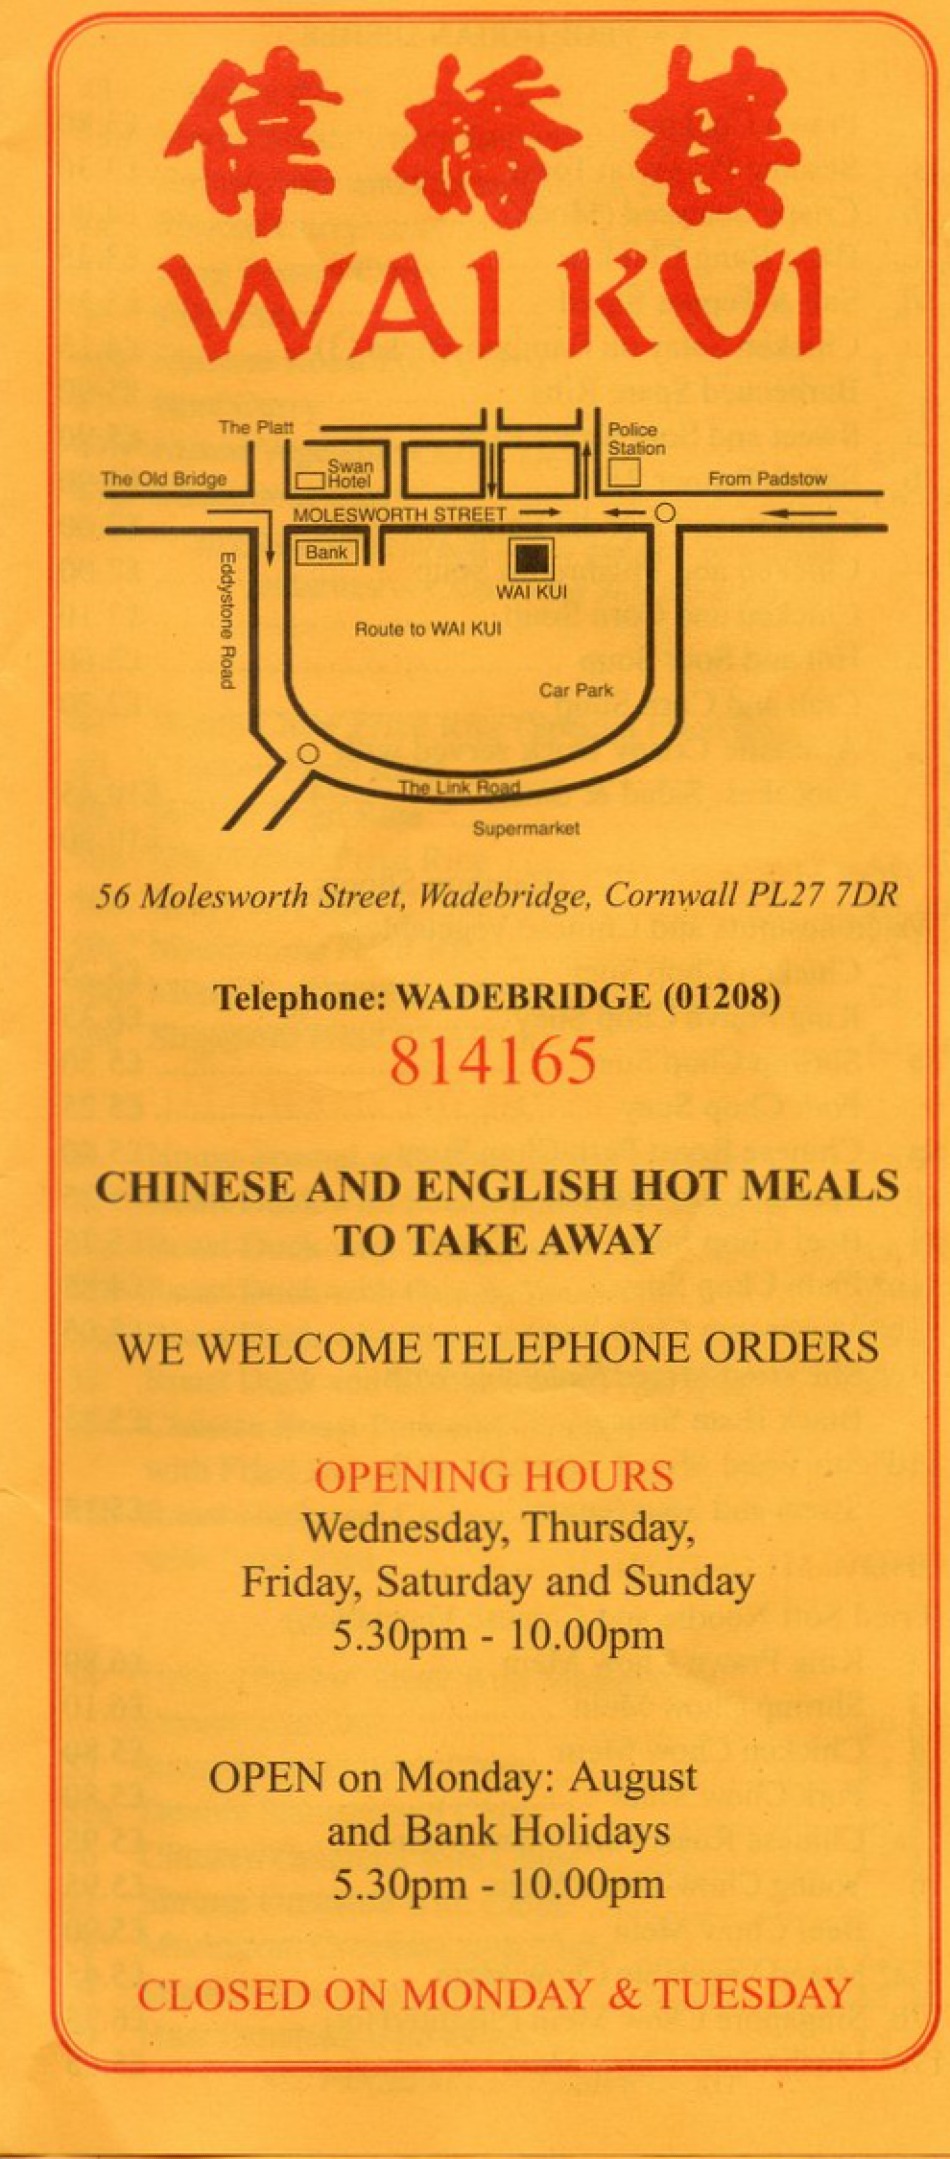 Takeaway Restaurant Menu Page - Wai Kui Chinese Take Away - Wadebridge